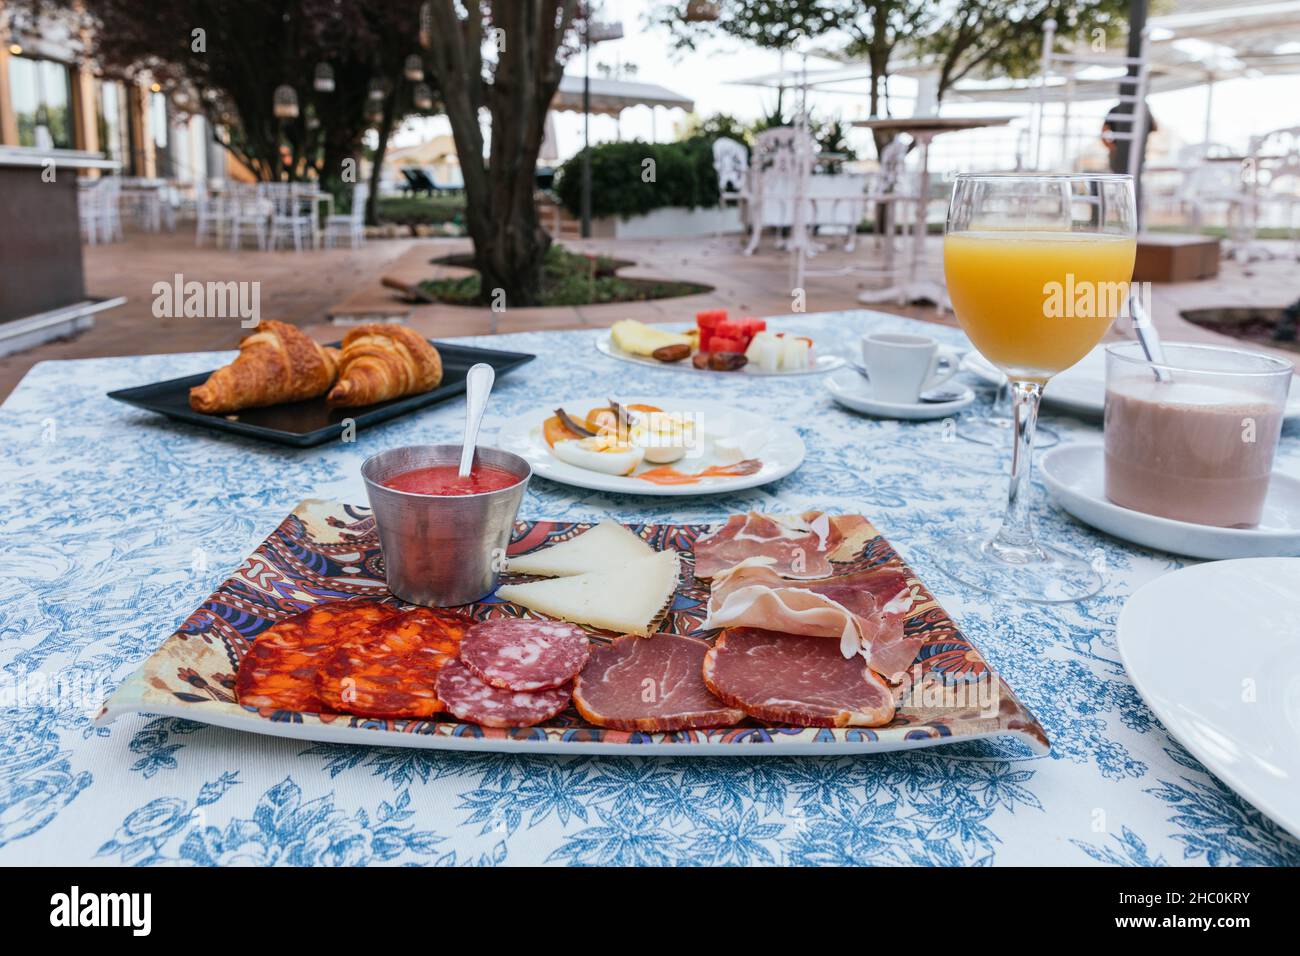 Kontinentales Frühstück auf der Terrasse mit Orangensaft, Obst, Kakao, Kaffee, Gebäck, Aufschnitt, Tomaten usw. Stockfoto